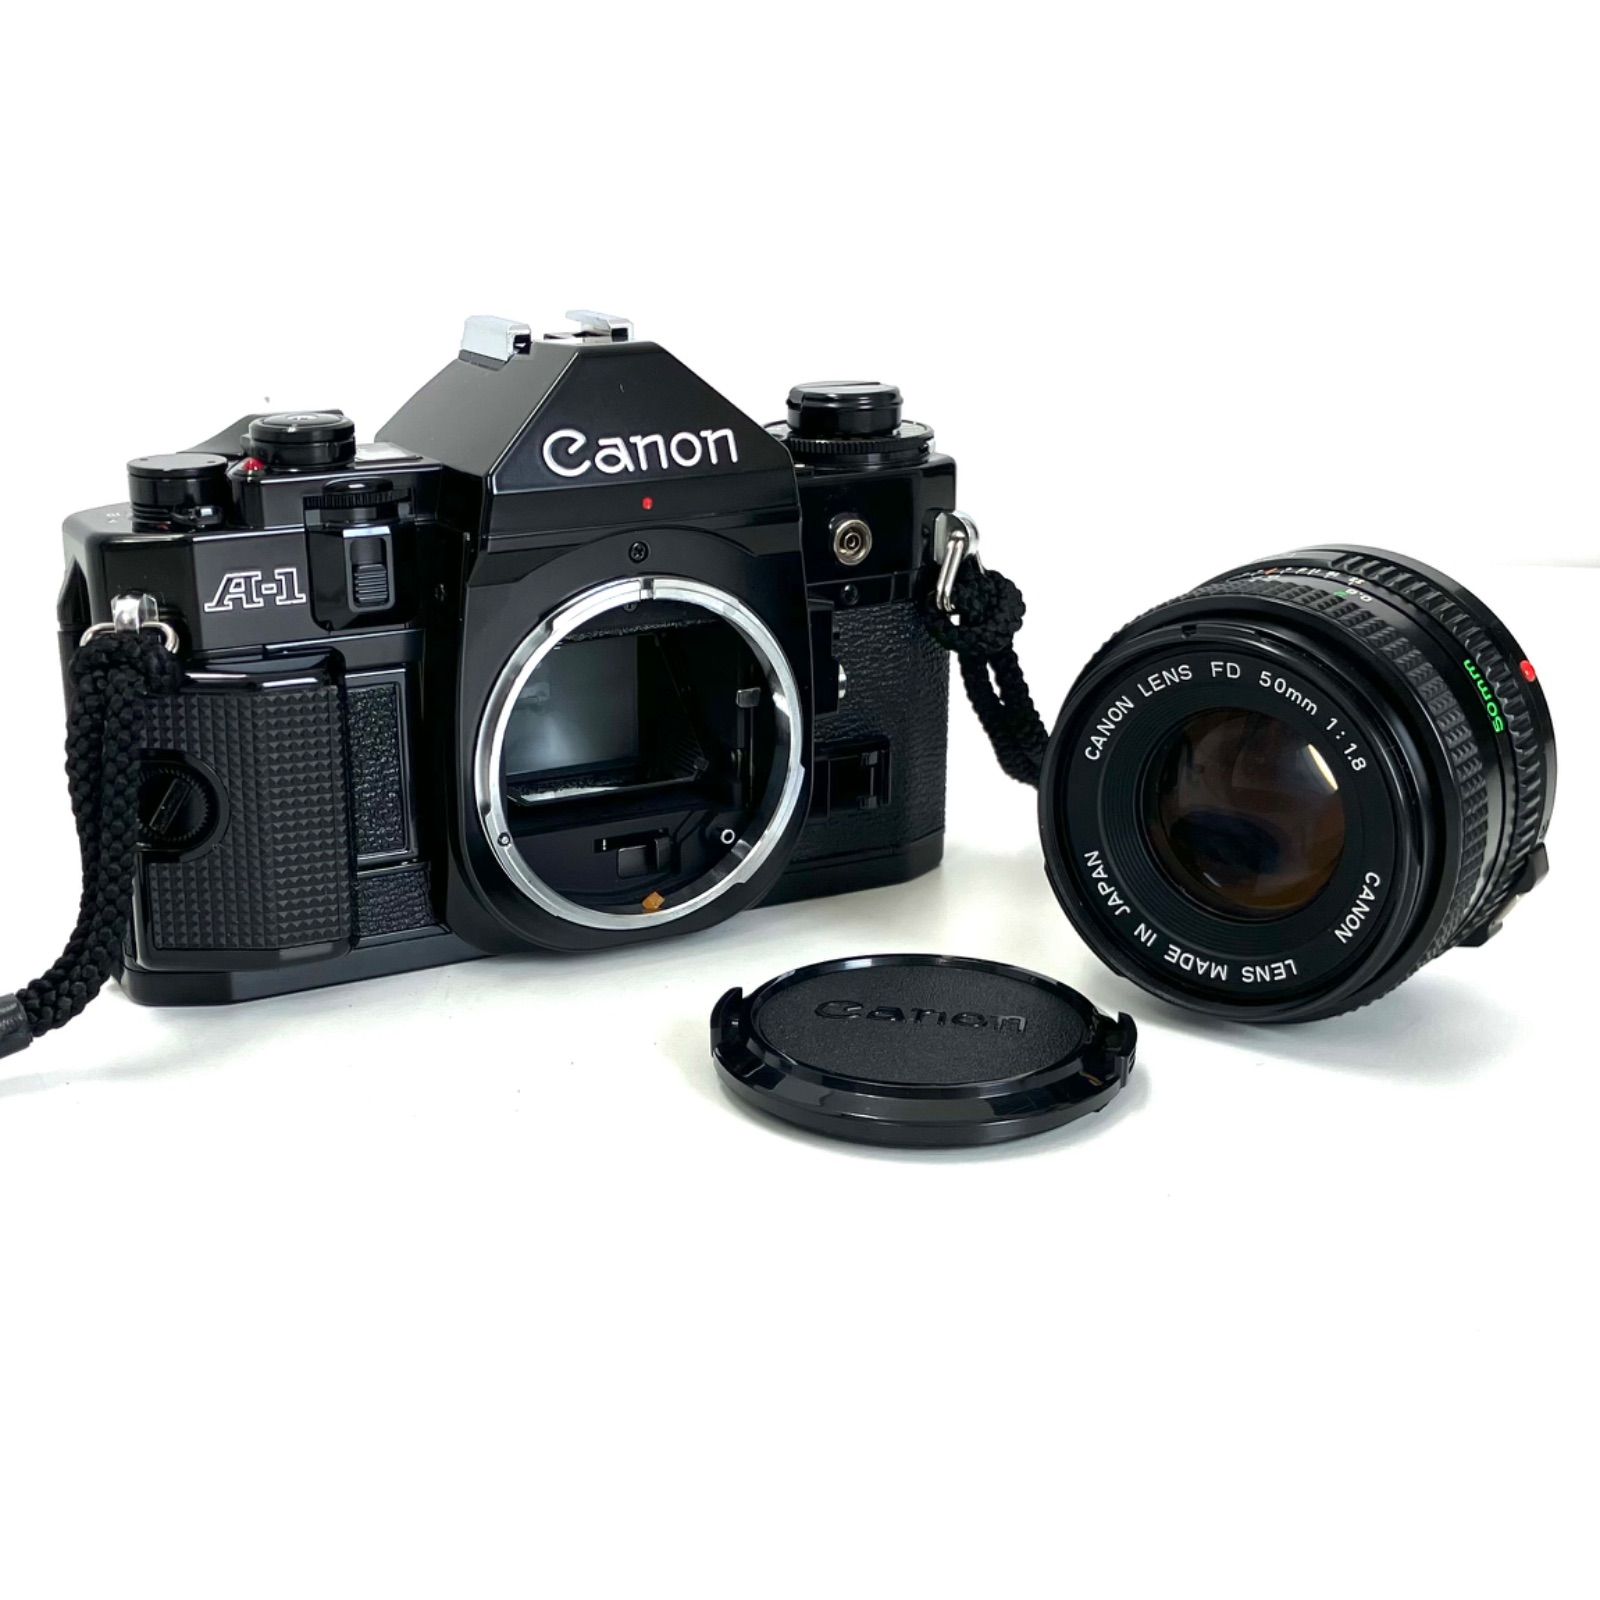 カメラ本体 Canon A-1 レンズ FD 50mm f1.8 本体レンズセット